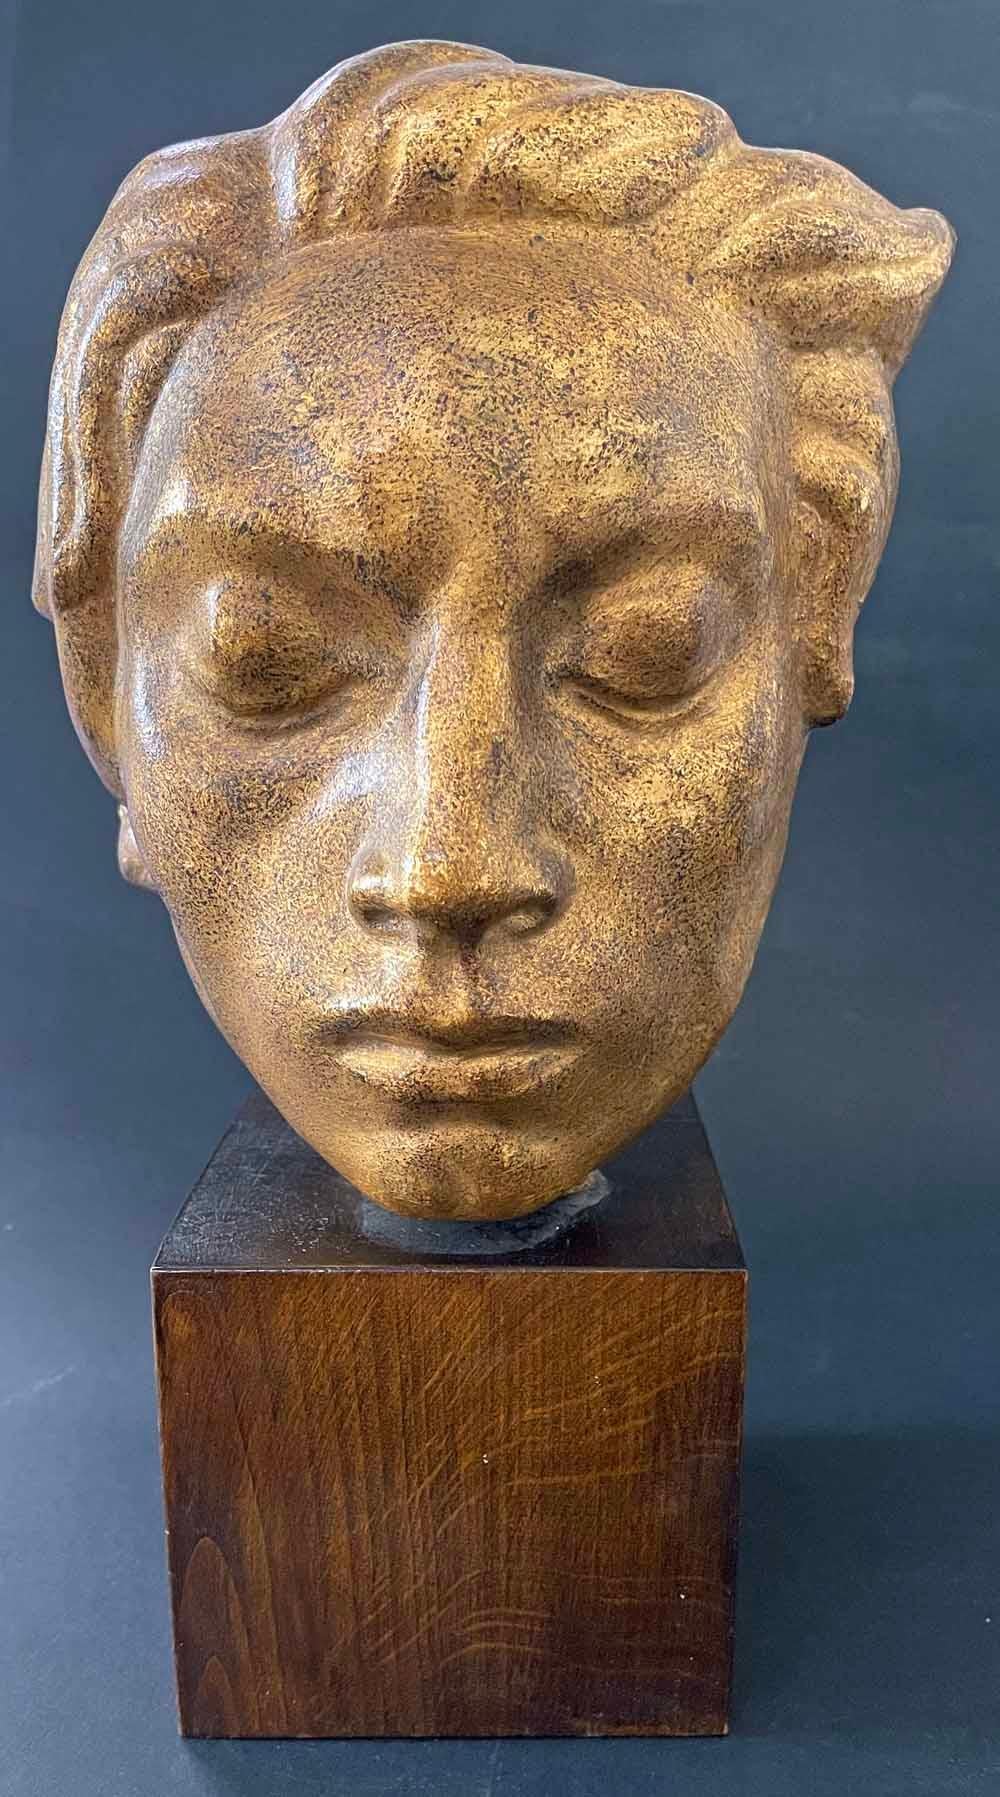 Ce visage fort et placide d'un jeune homme, les yeux fermés et les cheveux flottants, a été sculpté par John Lundqvist, parfois comparé à Carl Milles, le plus grand sculpteur suédois du début du XXe siècle.  Lundqvist a donné à son sujet une riche